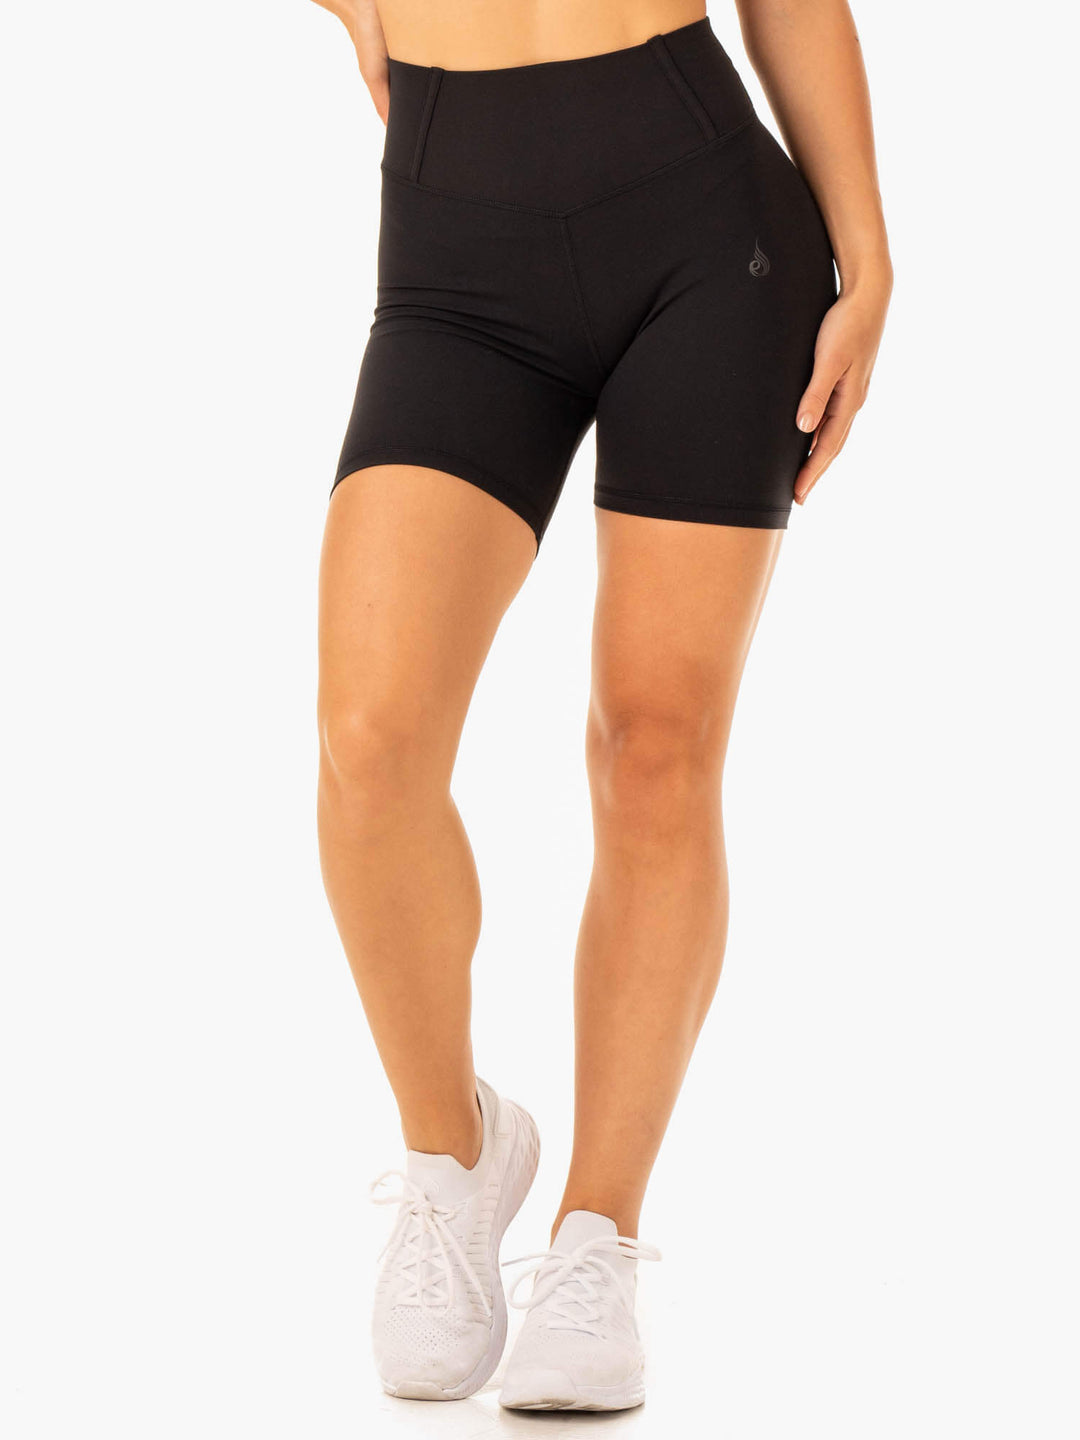 Form Scrunch Bum Shorts - Black Clothing Ryderwear 